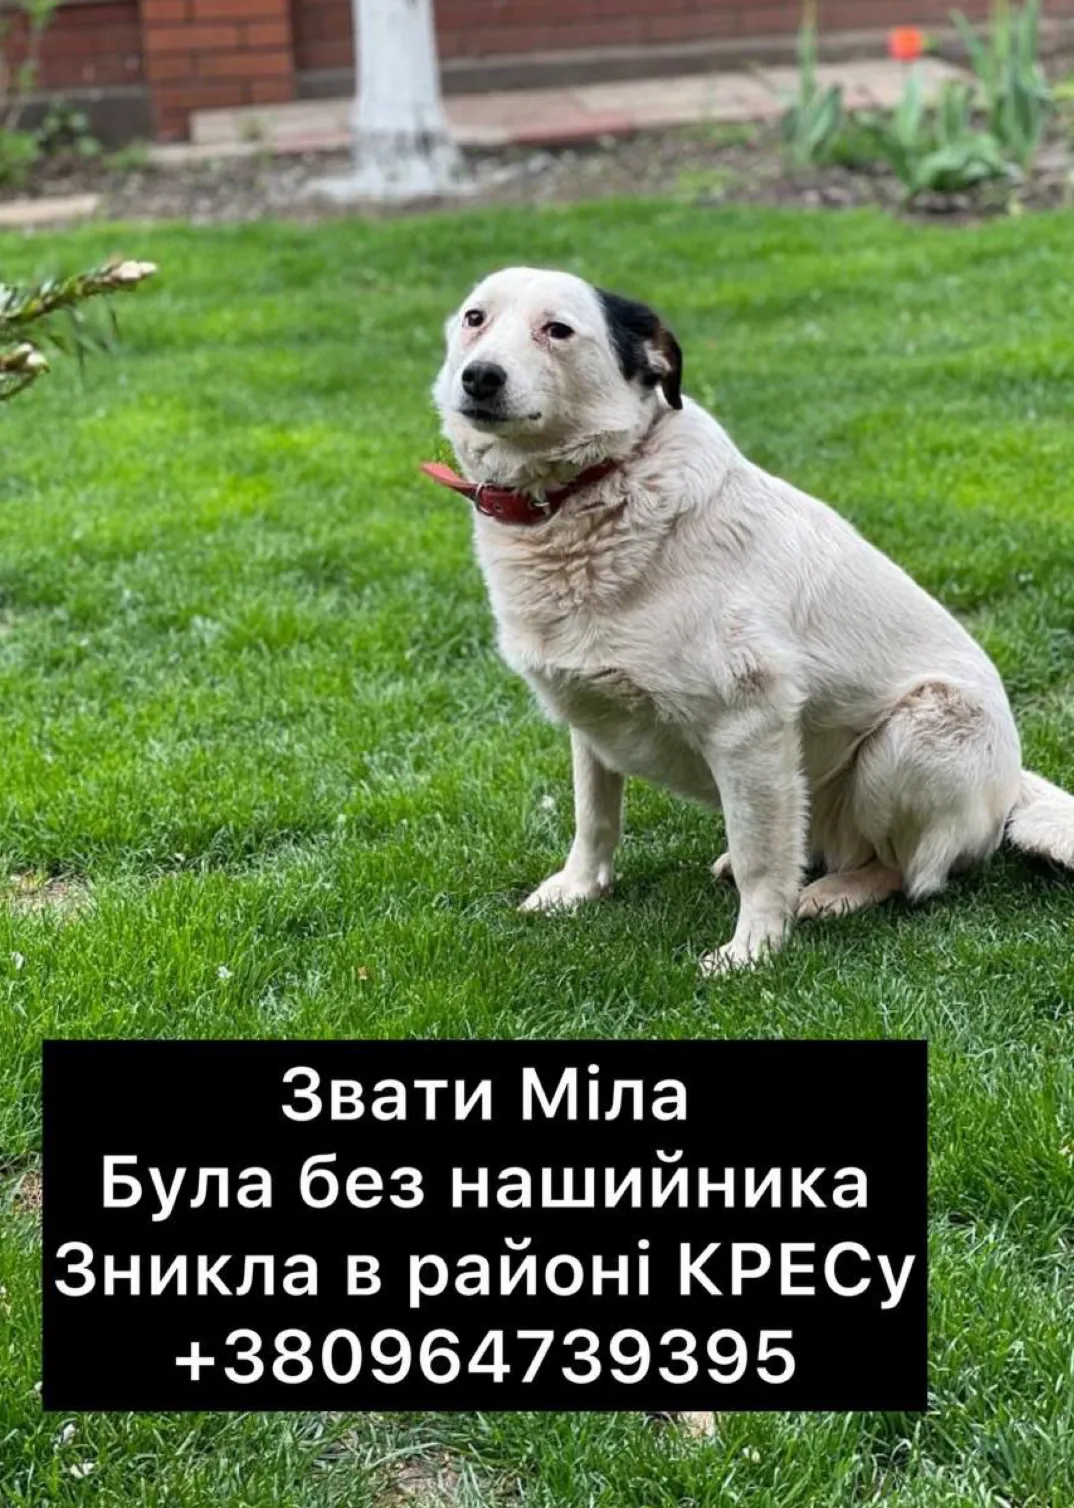 Исчезла собака Мила